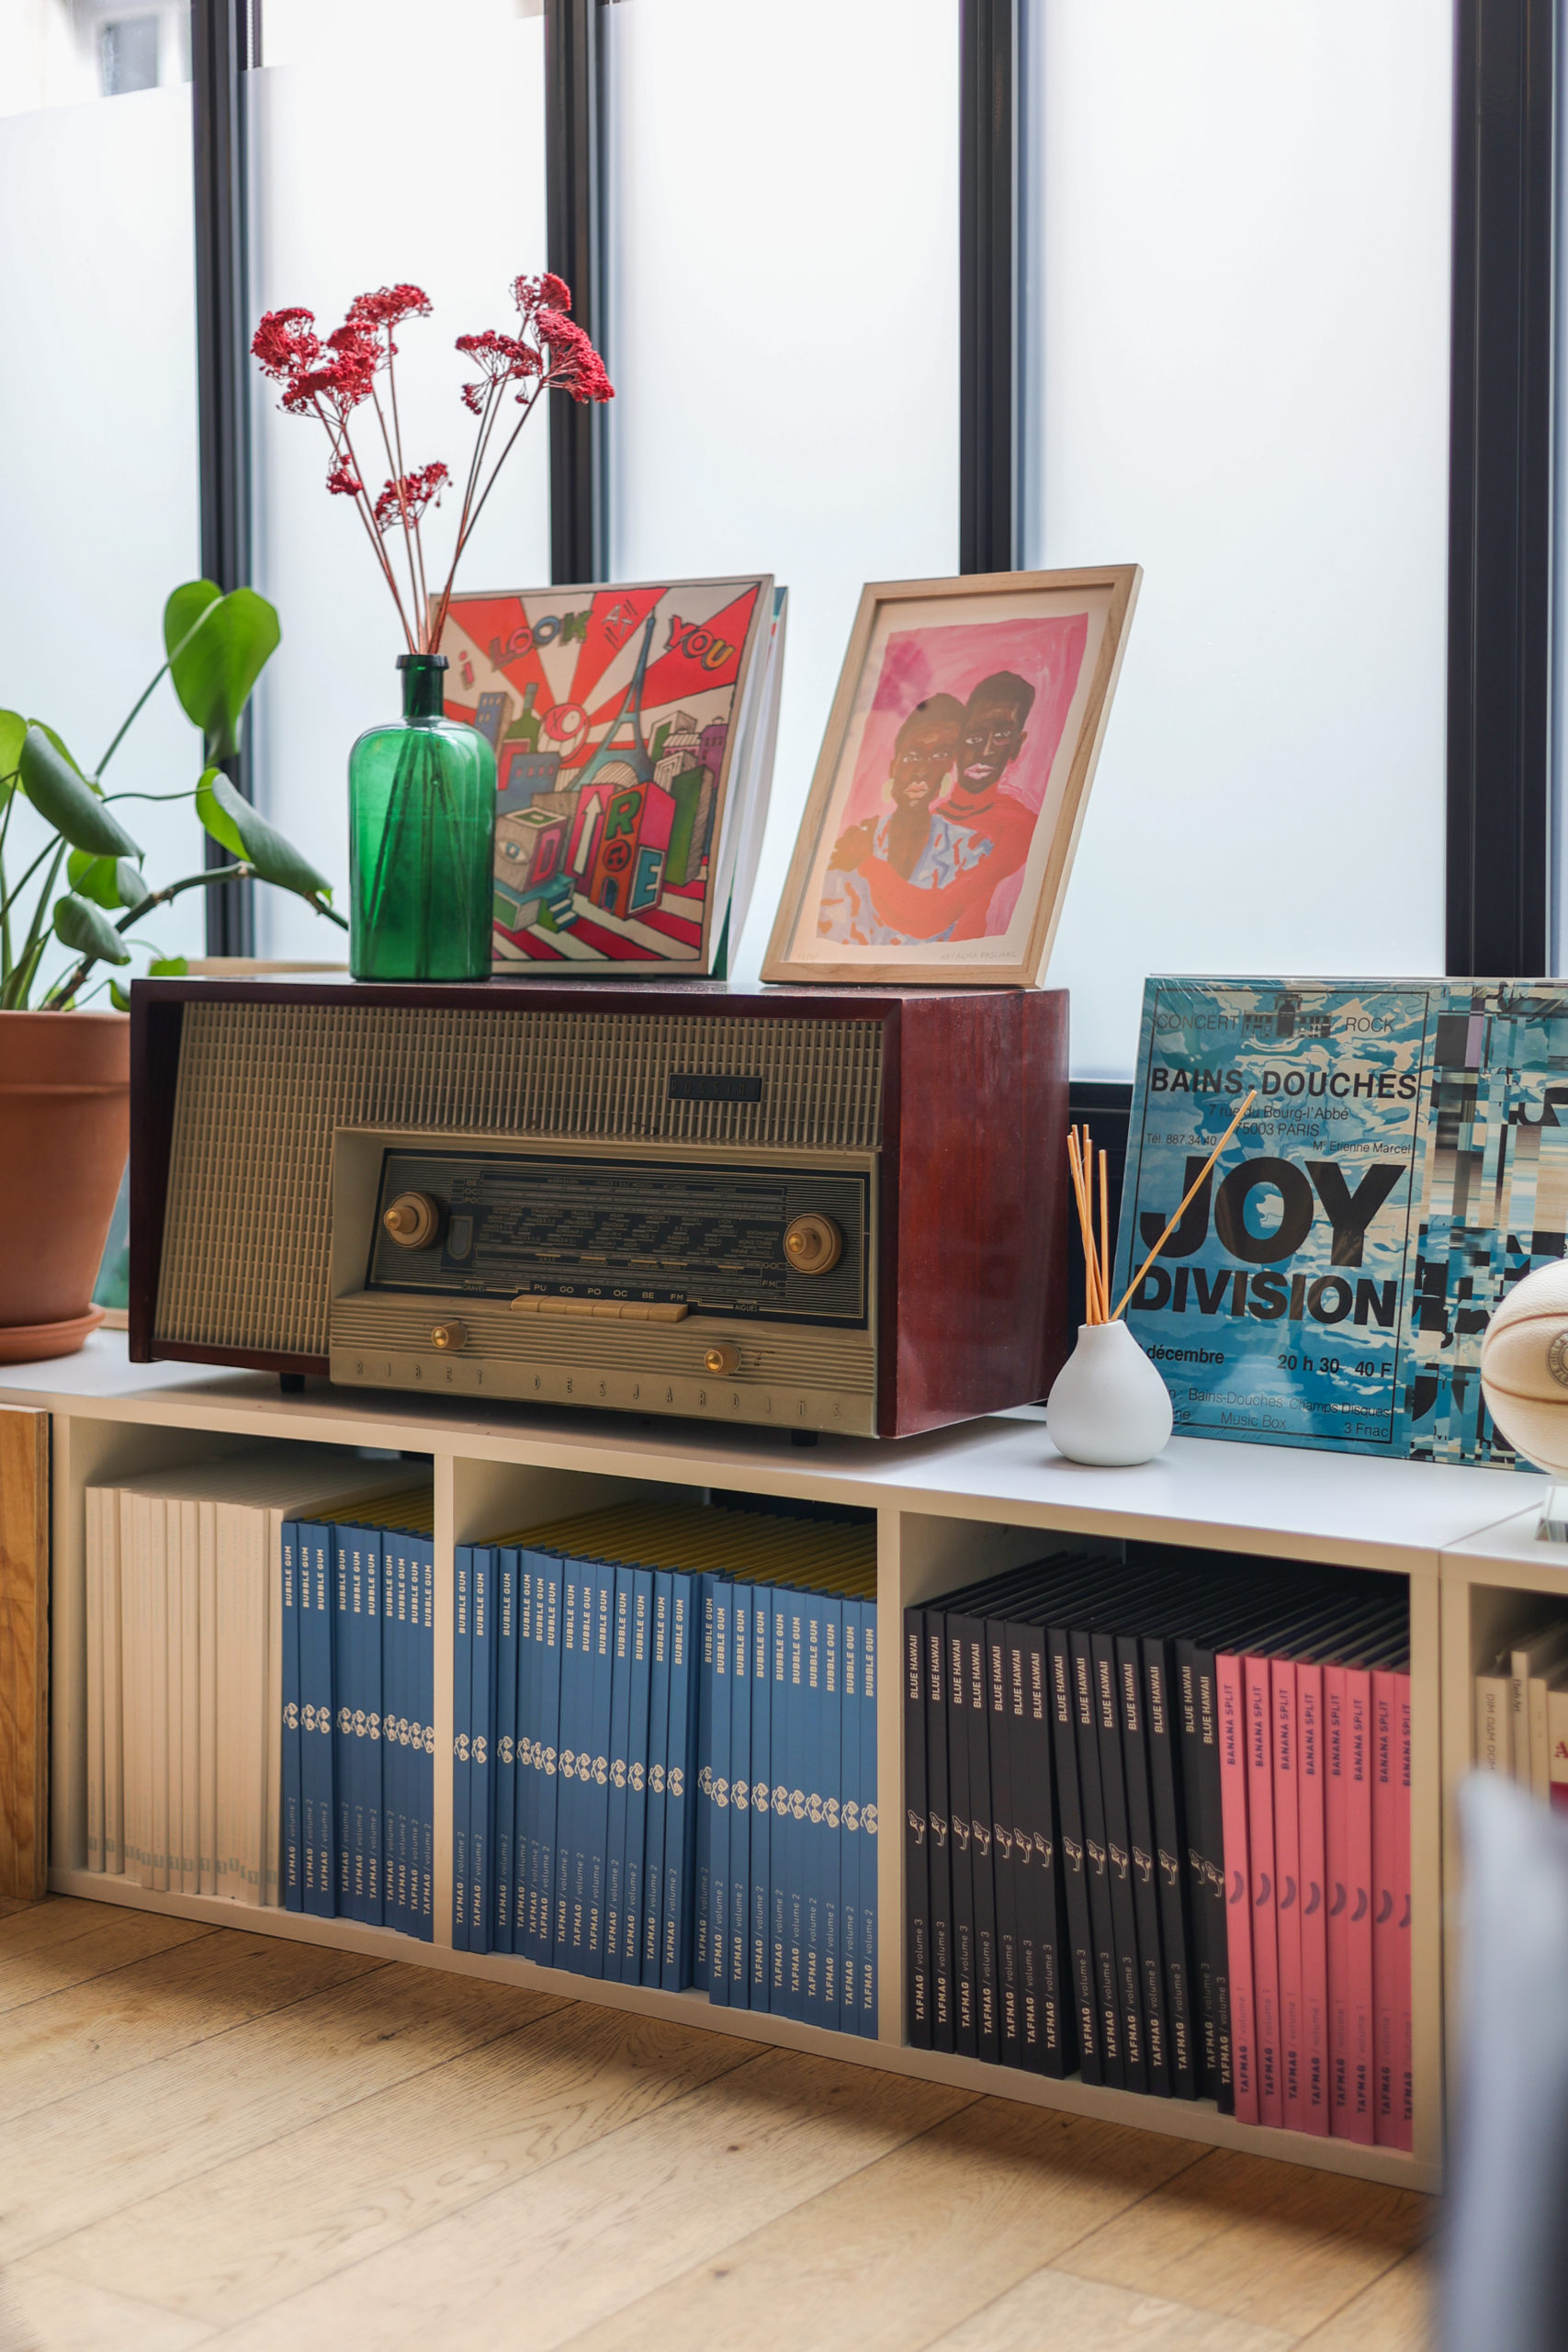 La collection de livre Tafmag dans une étagère blanche sur laquelle sont disposés une radio vintage, des cadres et des vinyles